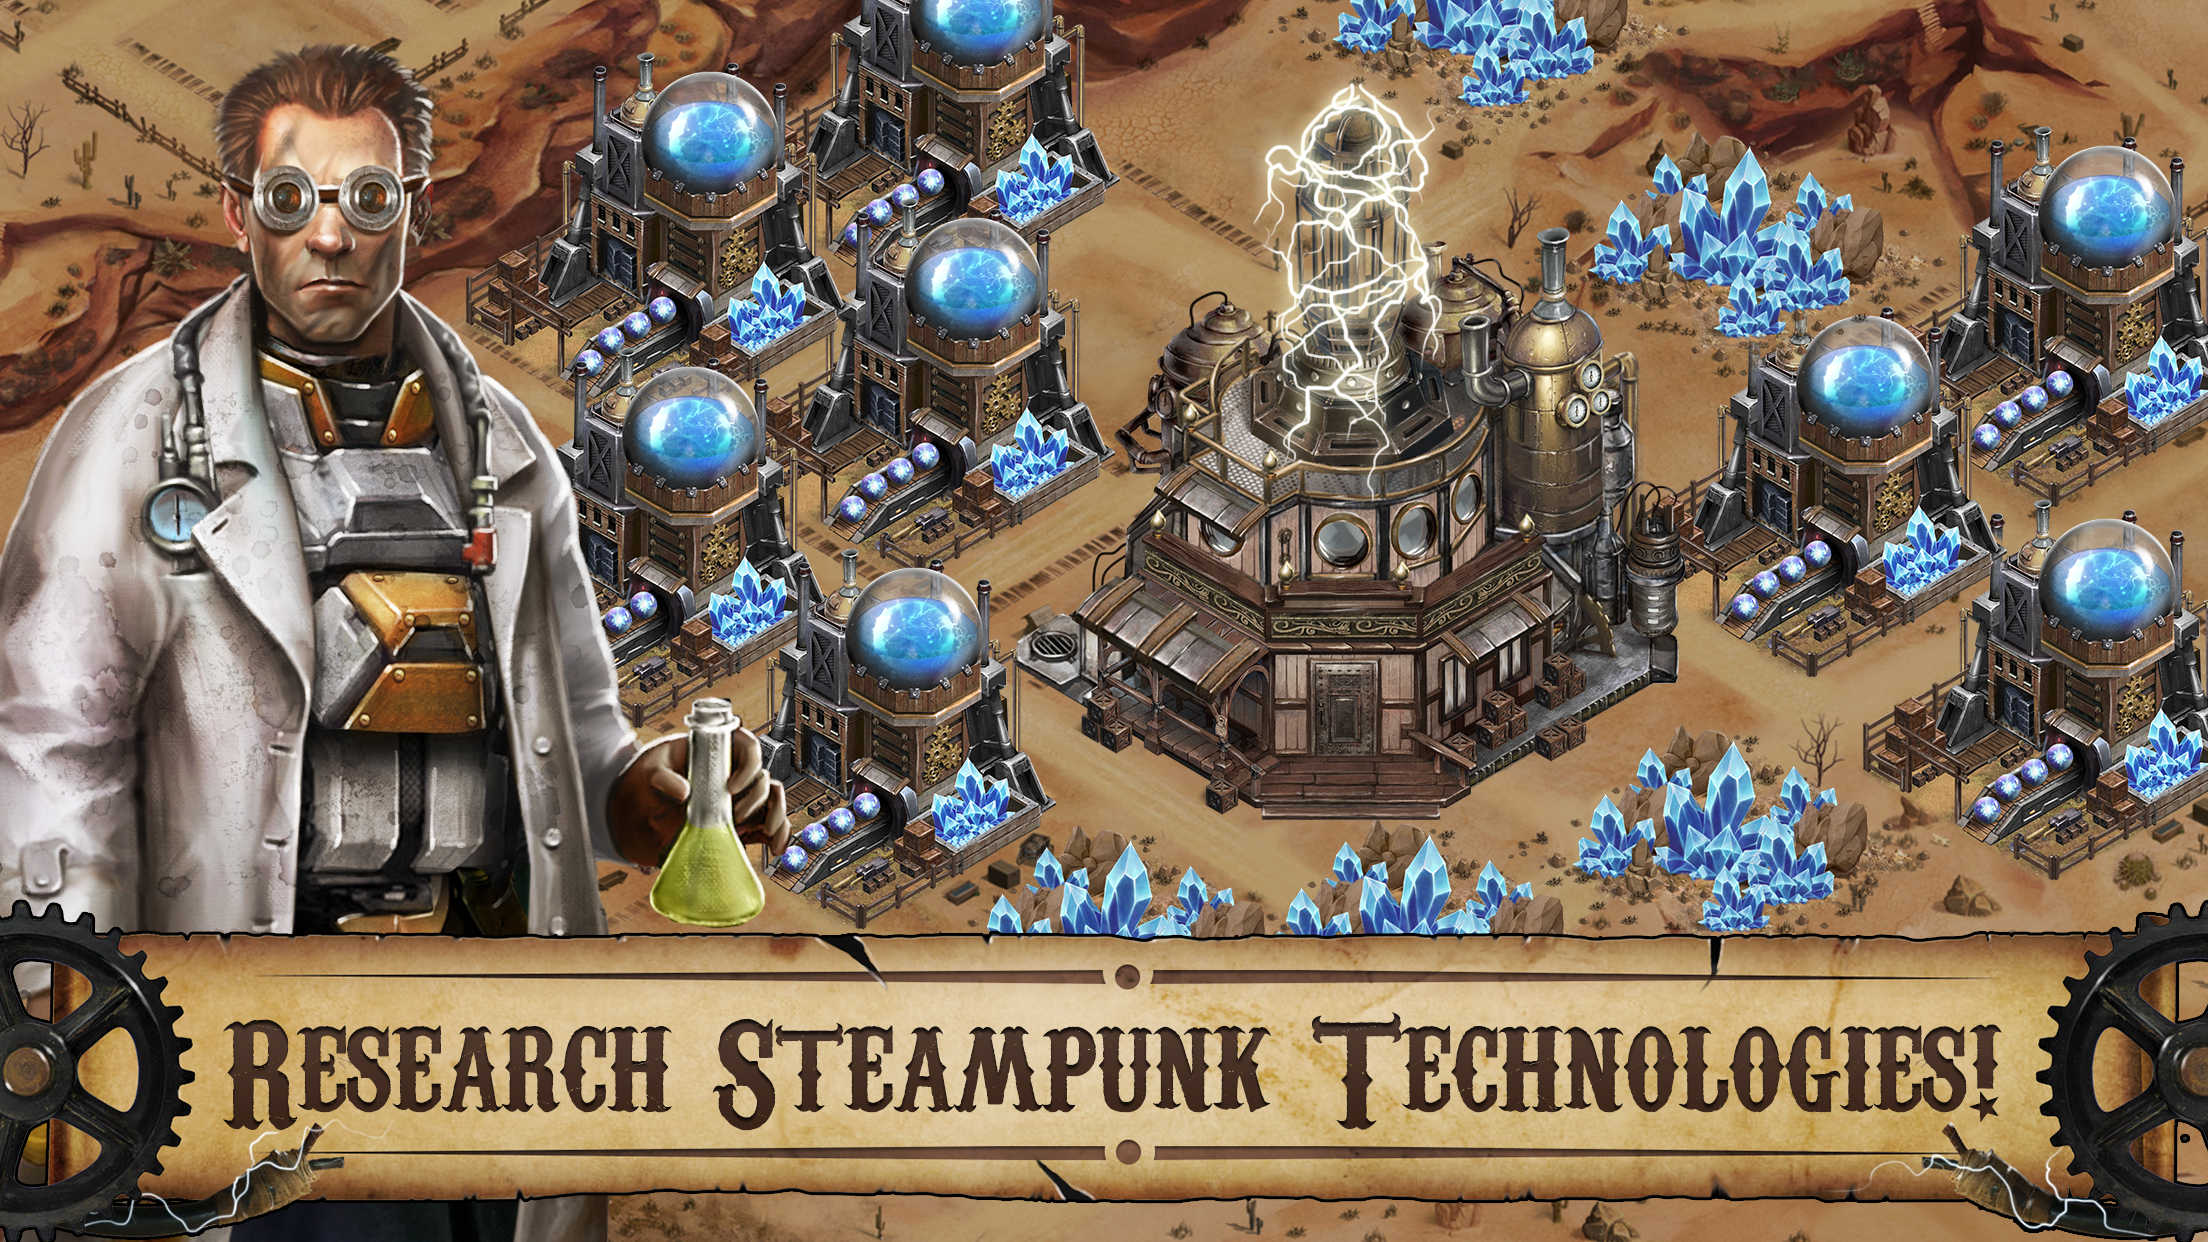 Screenshot of Wild West: Steampunk Alliances